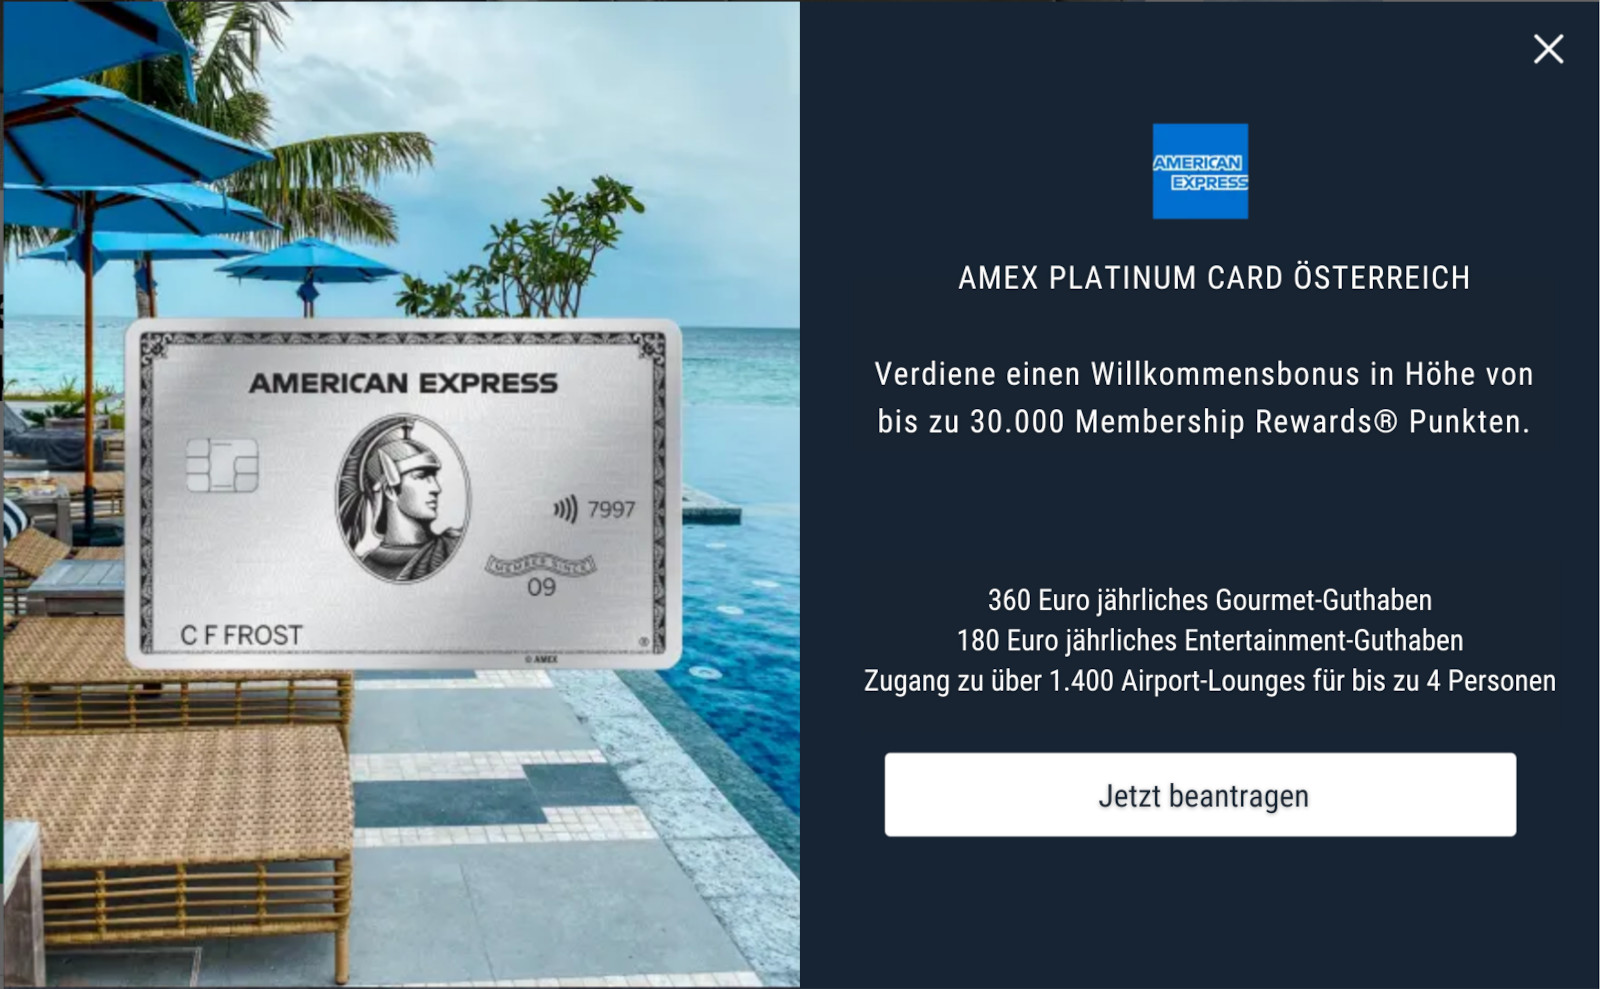 American Express Platinum Card Österreich Angebot